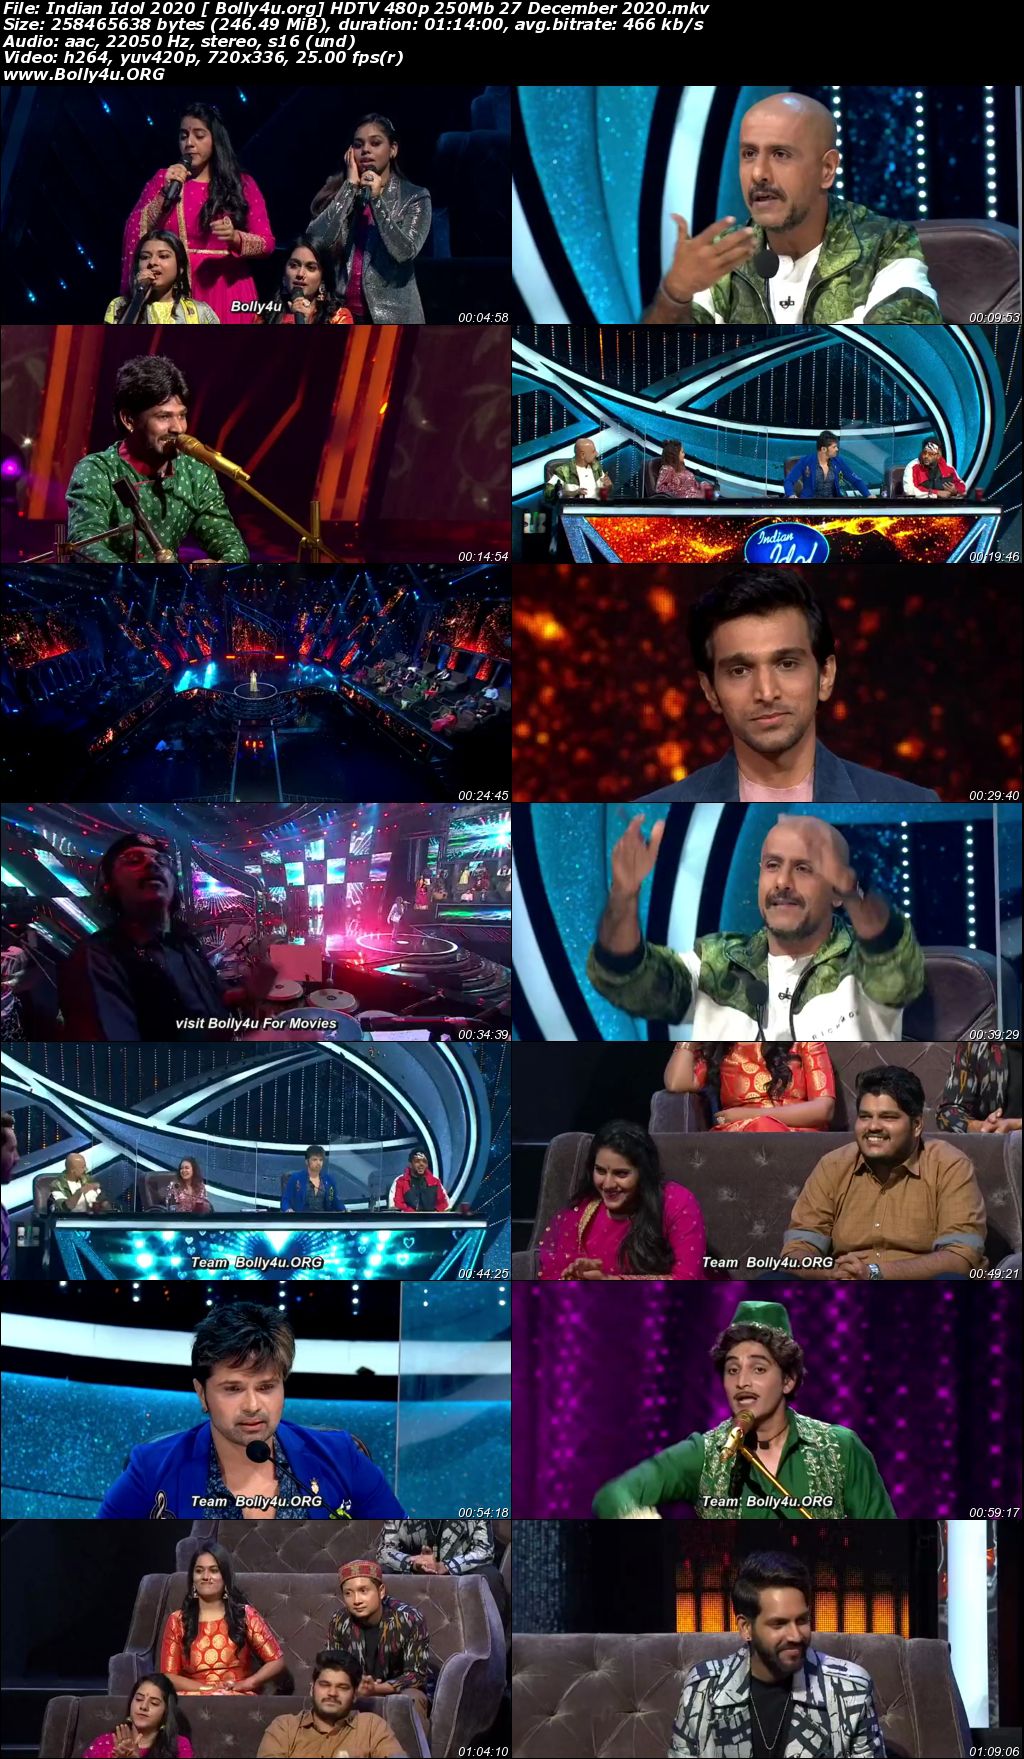 Indian Idol 2020 HDTV 480p 250Mb 27 December 2020 Download